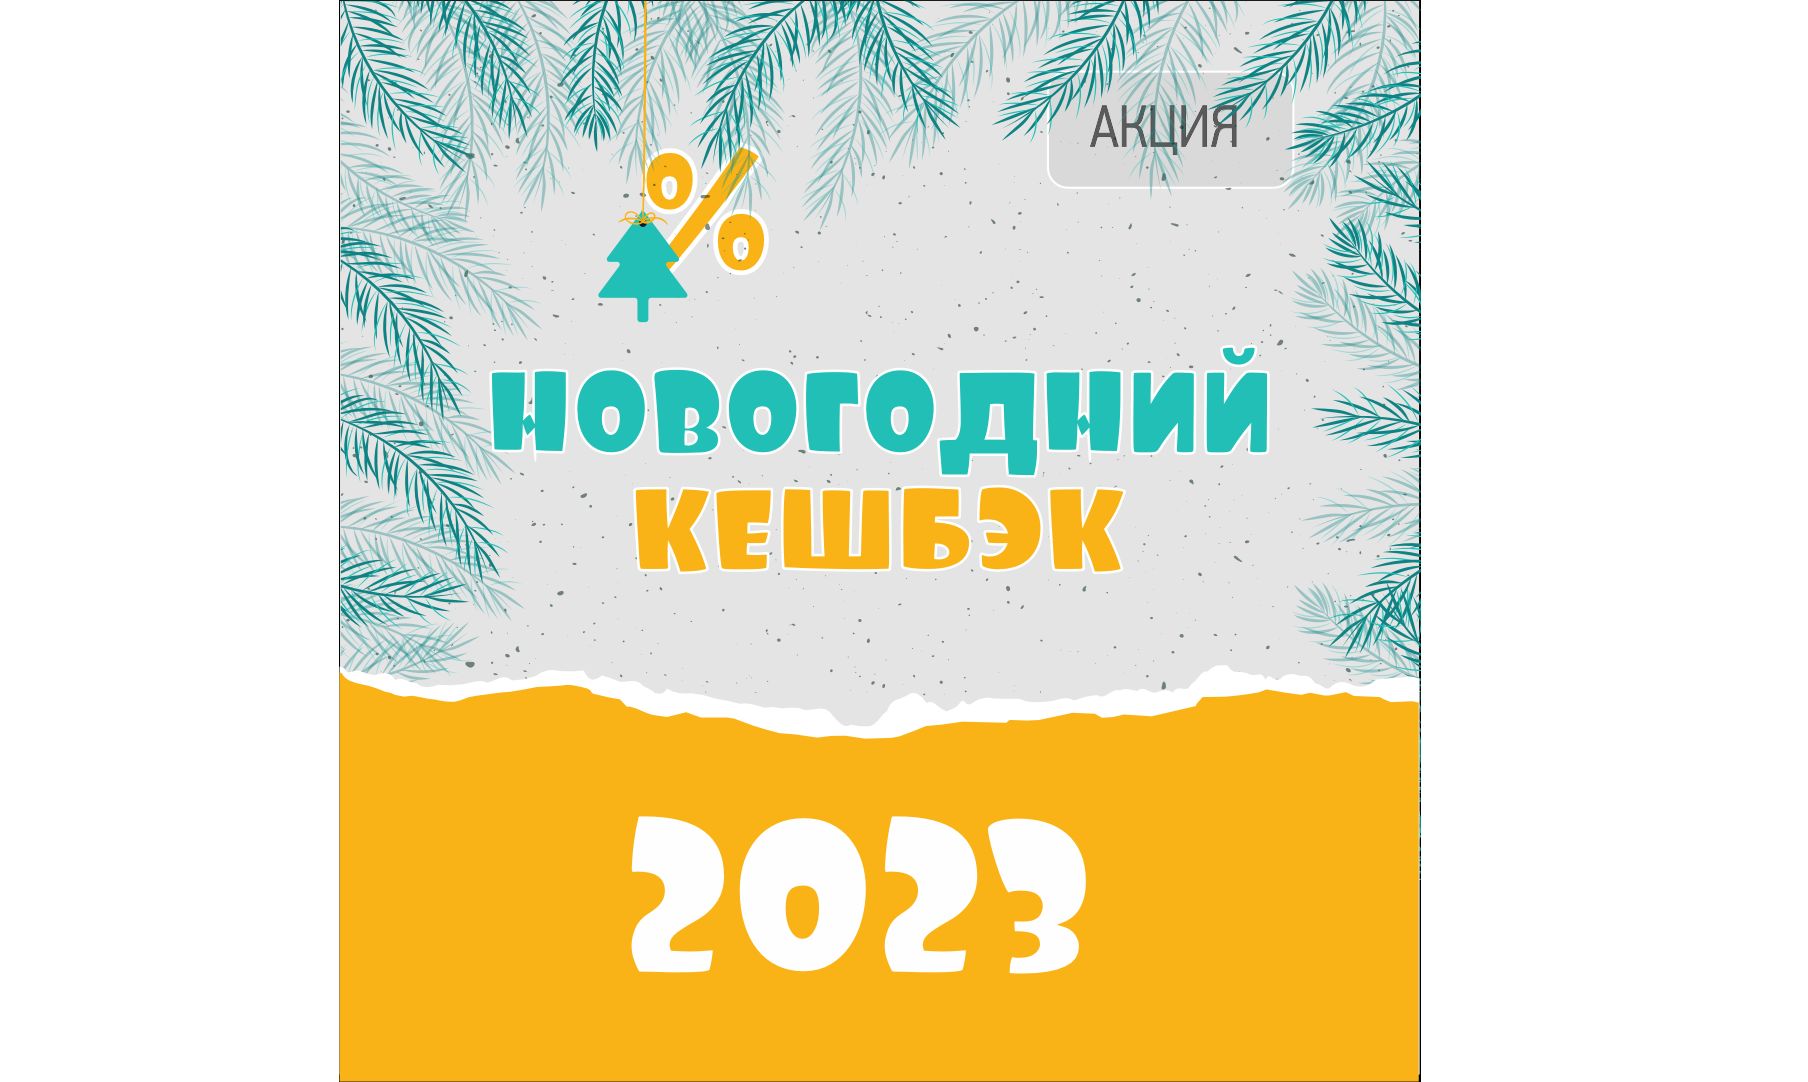 Акция «Новогодний кешбэк – 2023» для абонентов «ТНС энерго Ярославль»